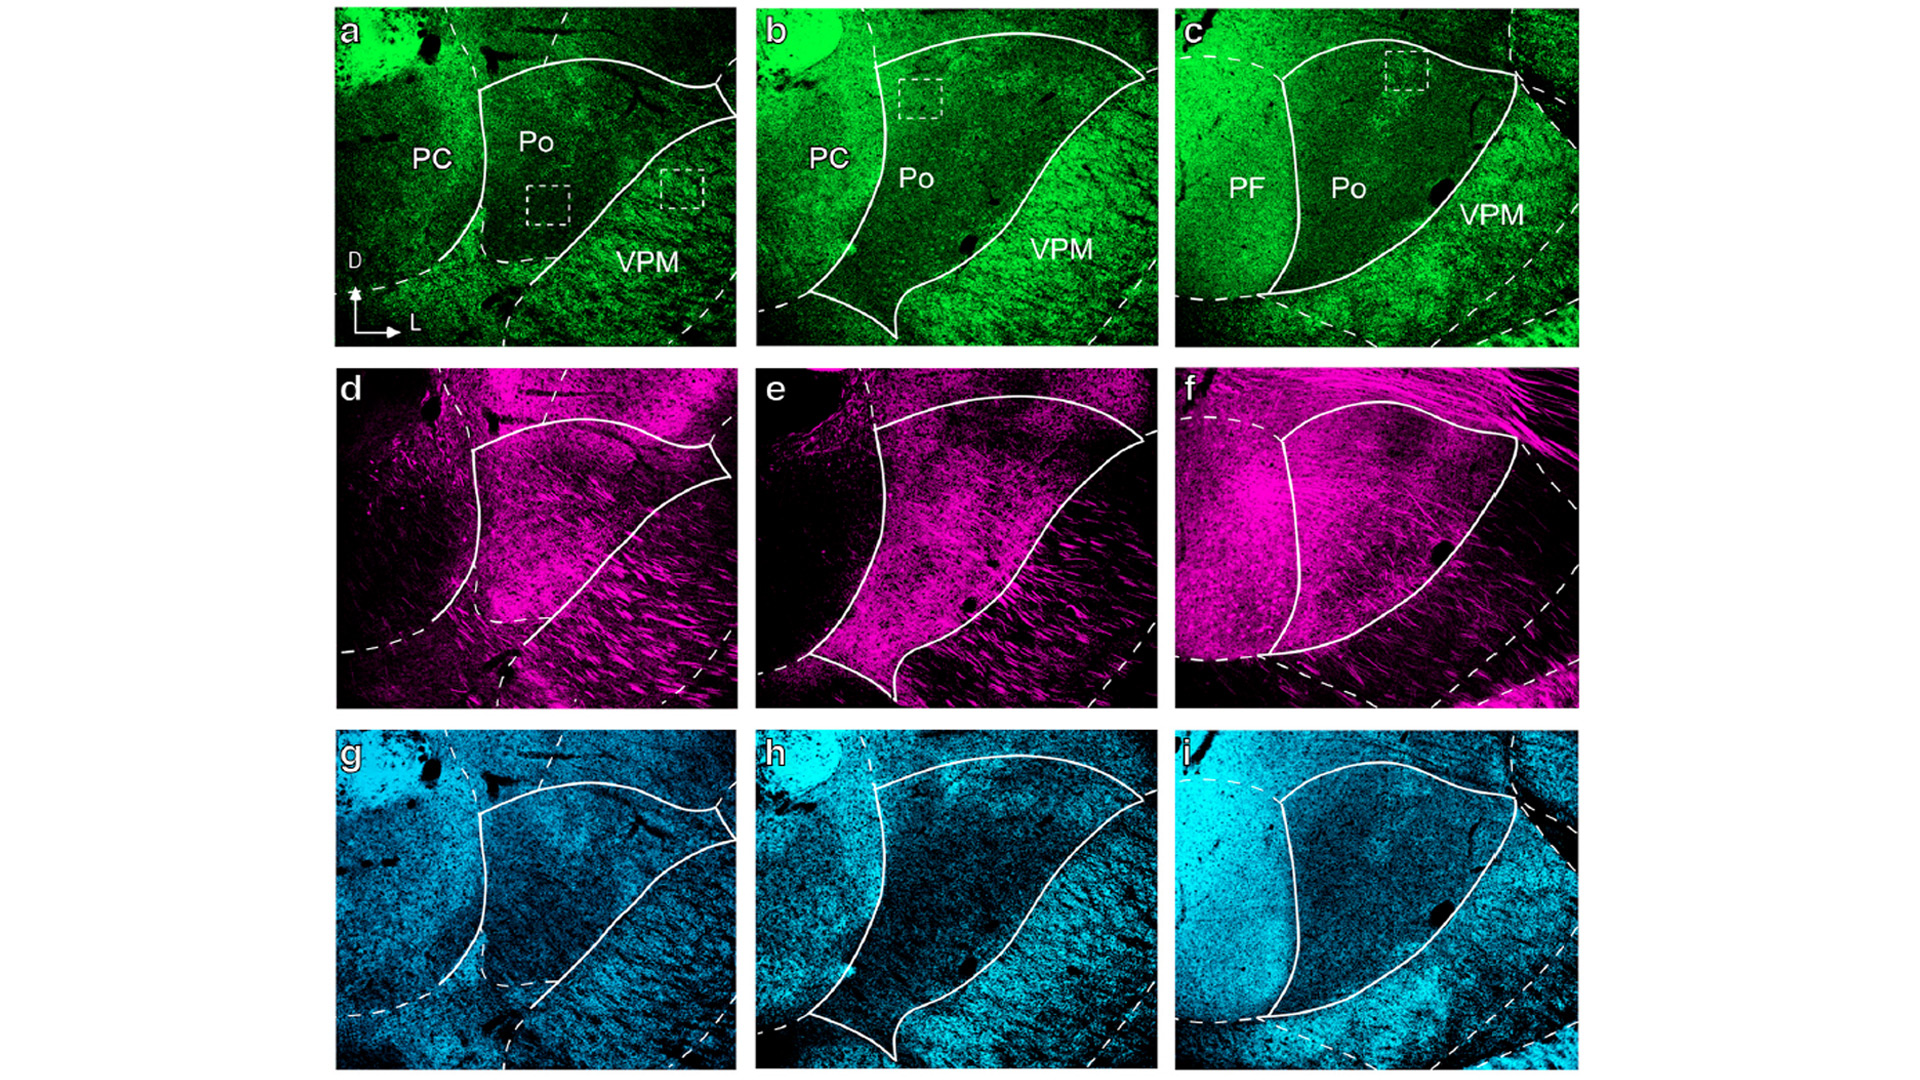 Imagen que compara en microscopia de fluorescencia confocal la distribución en el núcleo posterior (Po) del tálamo de las terminaciones sinápticas procedentes del tronco del encéfalo y de la médula espinal (en verde) o de la corteza cerebral (en rojo).